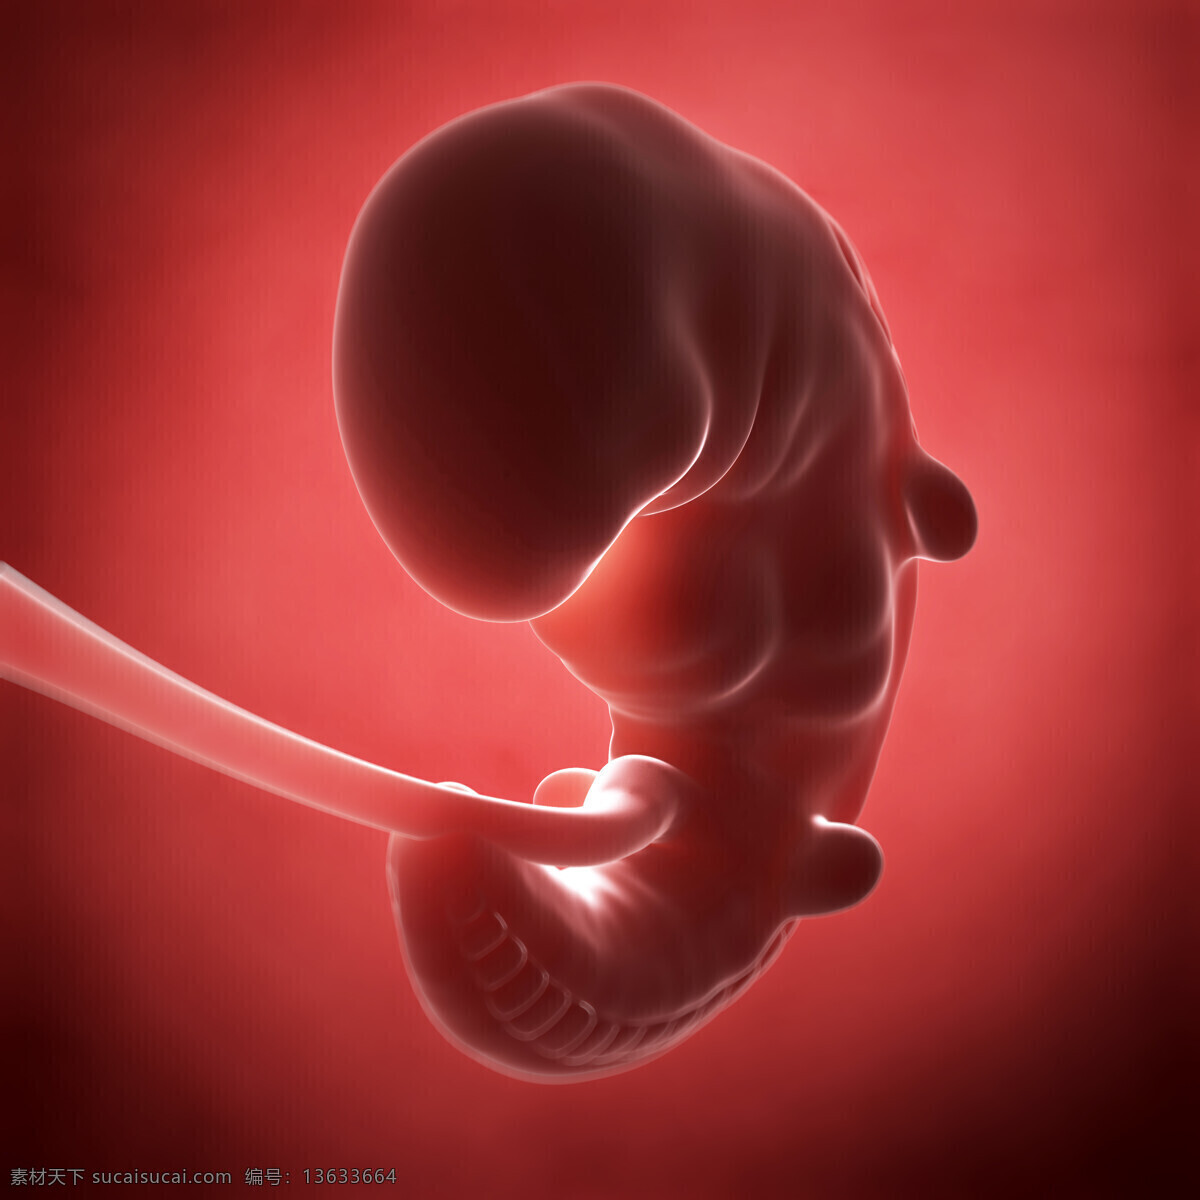 肚子 里 正在 发育 胎儿 孩子 宝宝 体内 脐带 其他人物 人物图片